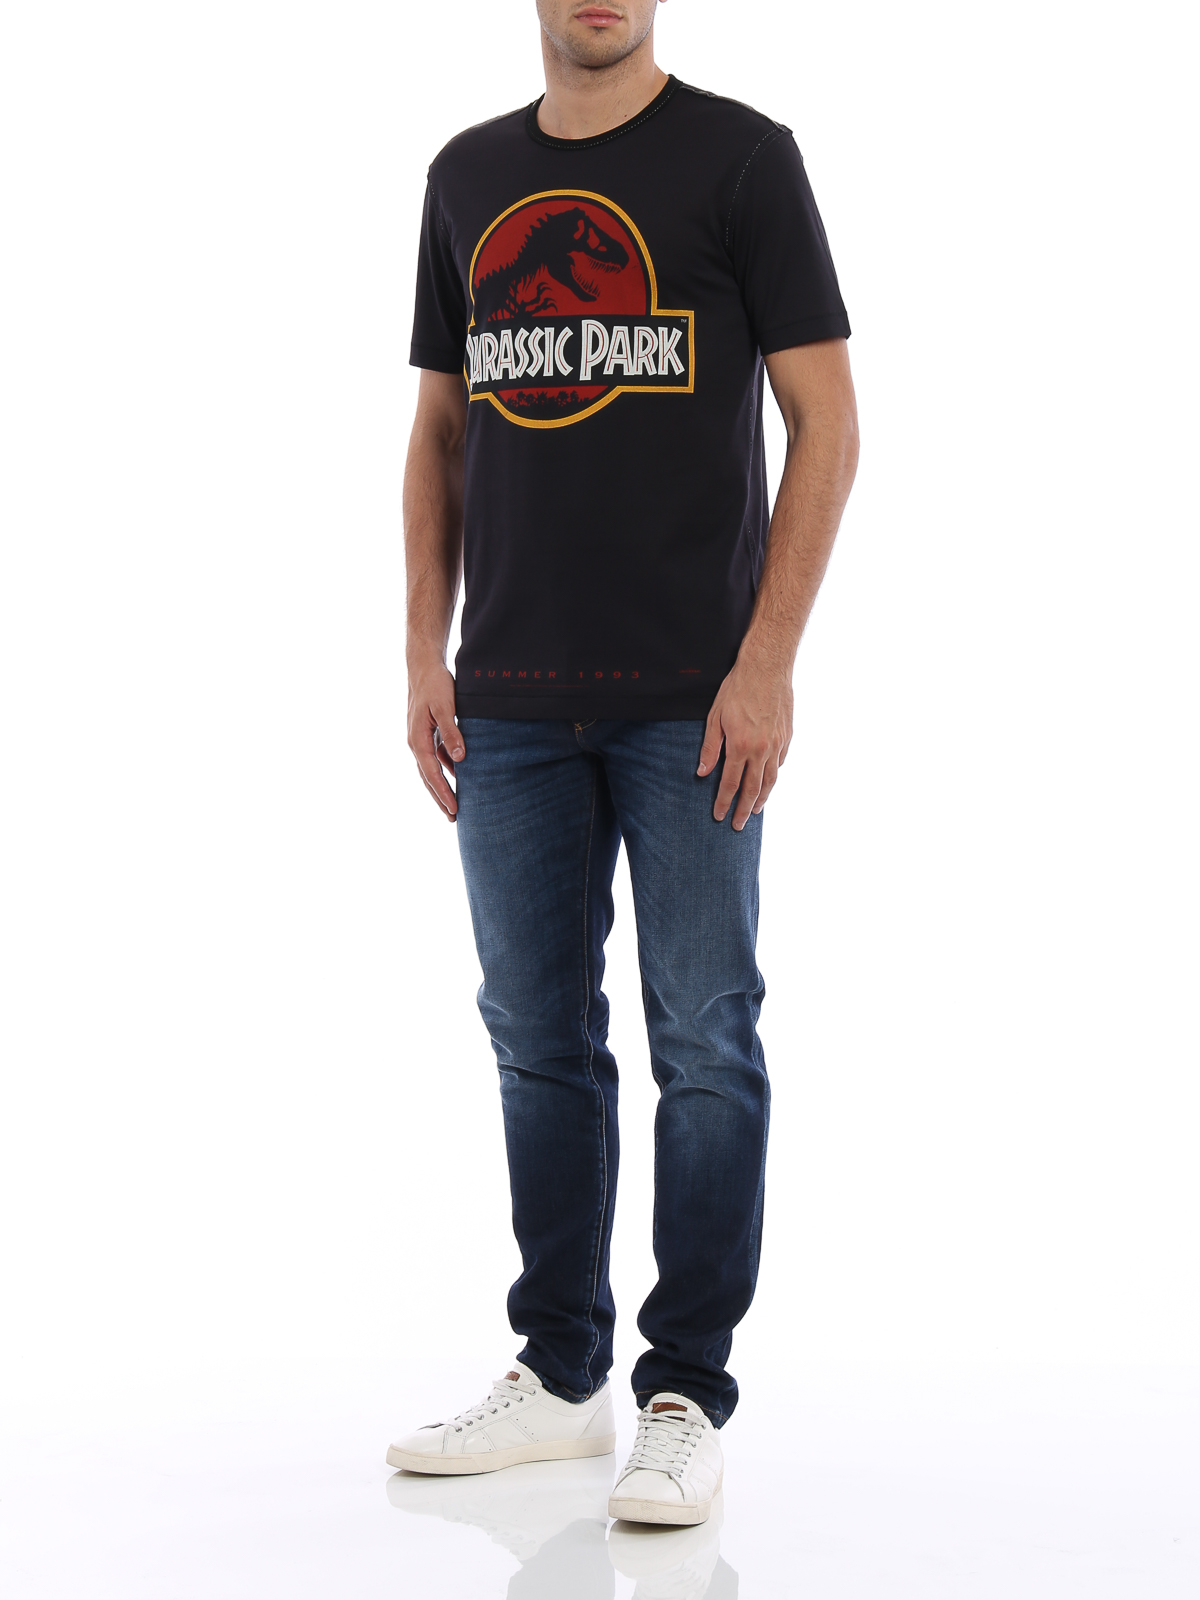 Camisetas Dolce & - Camiseta - Jurassic Park - G8HM0THP7STHND89